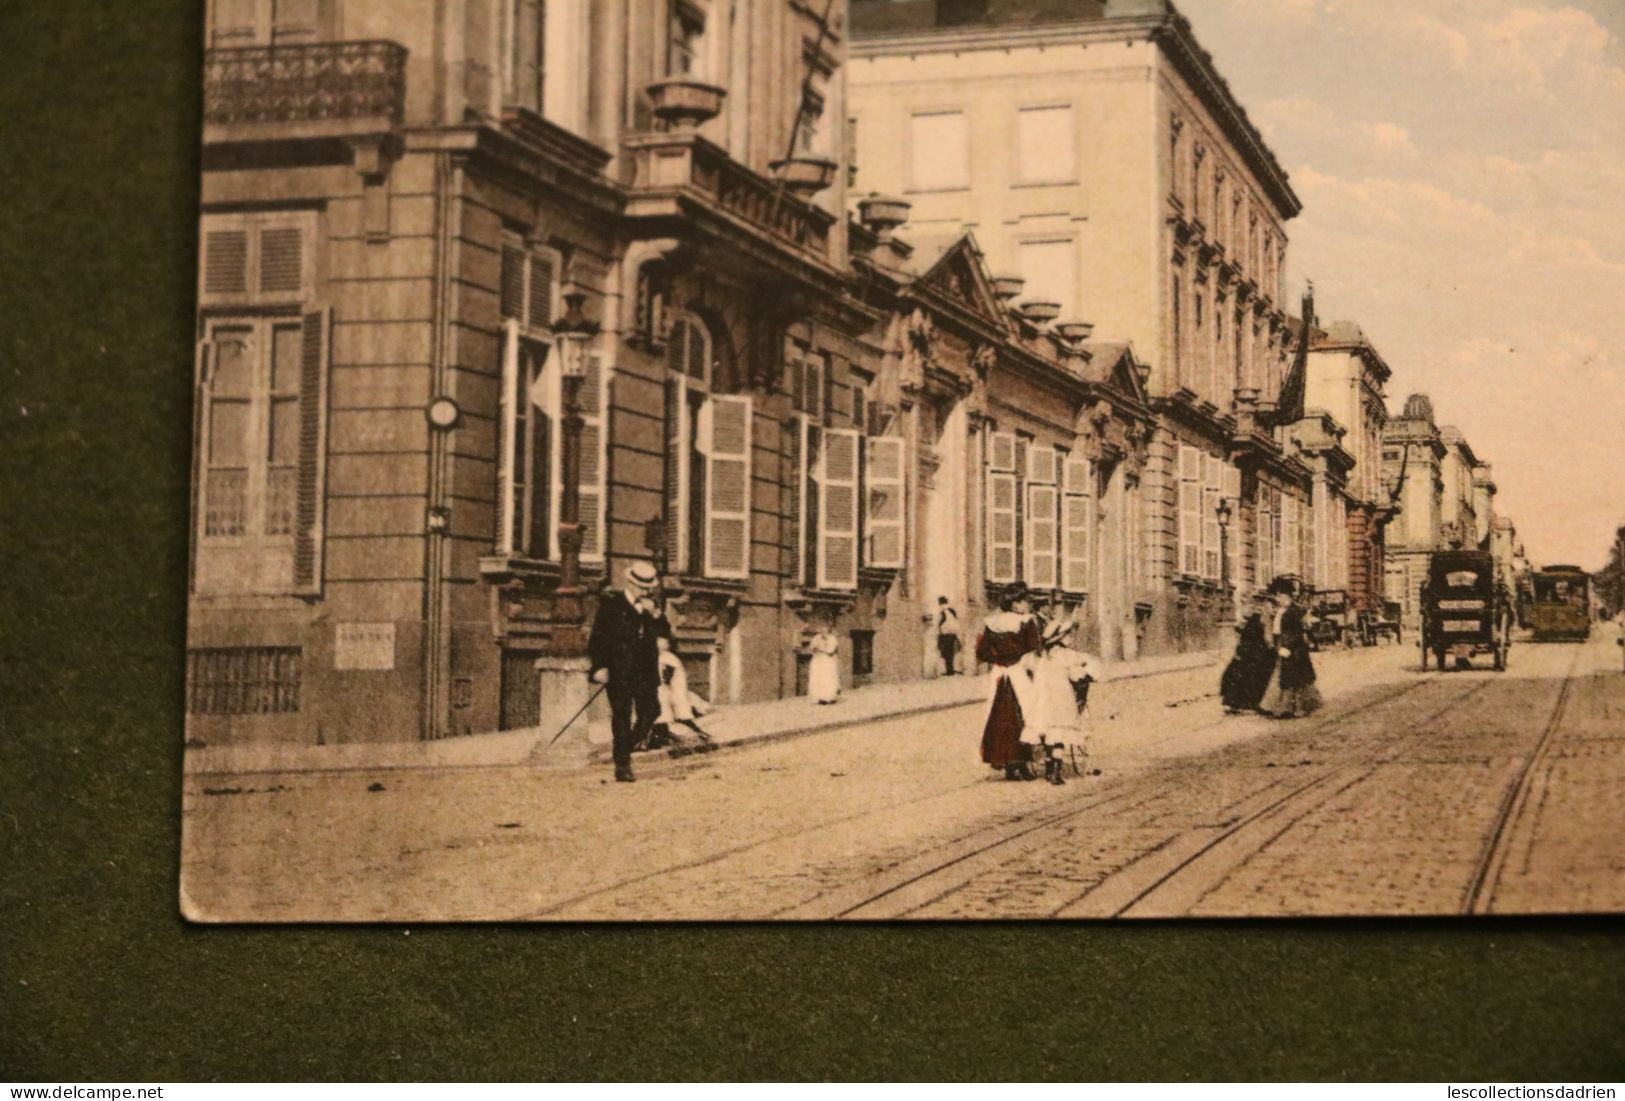 Carte Postale Bruxelles Rue De La Loi - Envoi En Temps De Guerre WWI - 8 Centimes Occupation OC13 - Plätze